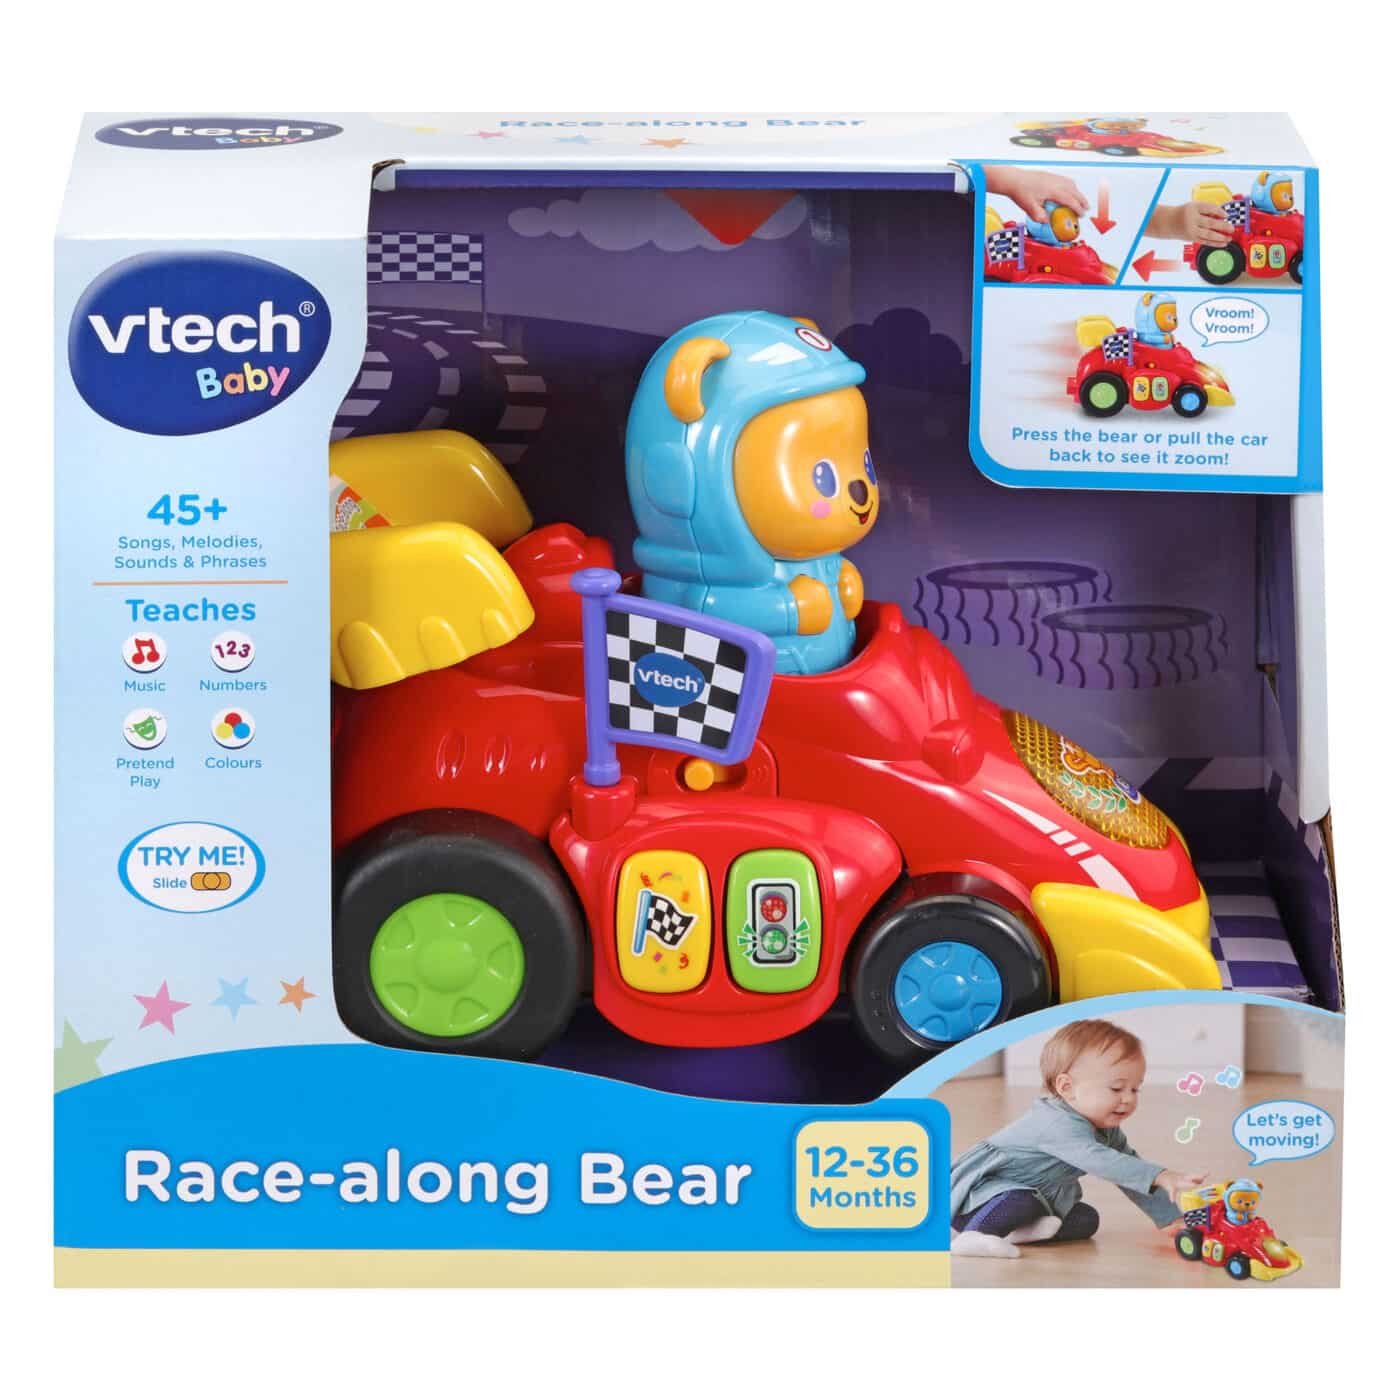 Vtech Baby Race-along Bear